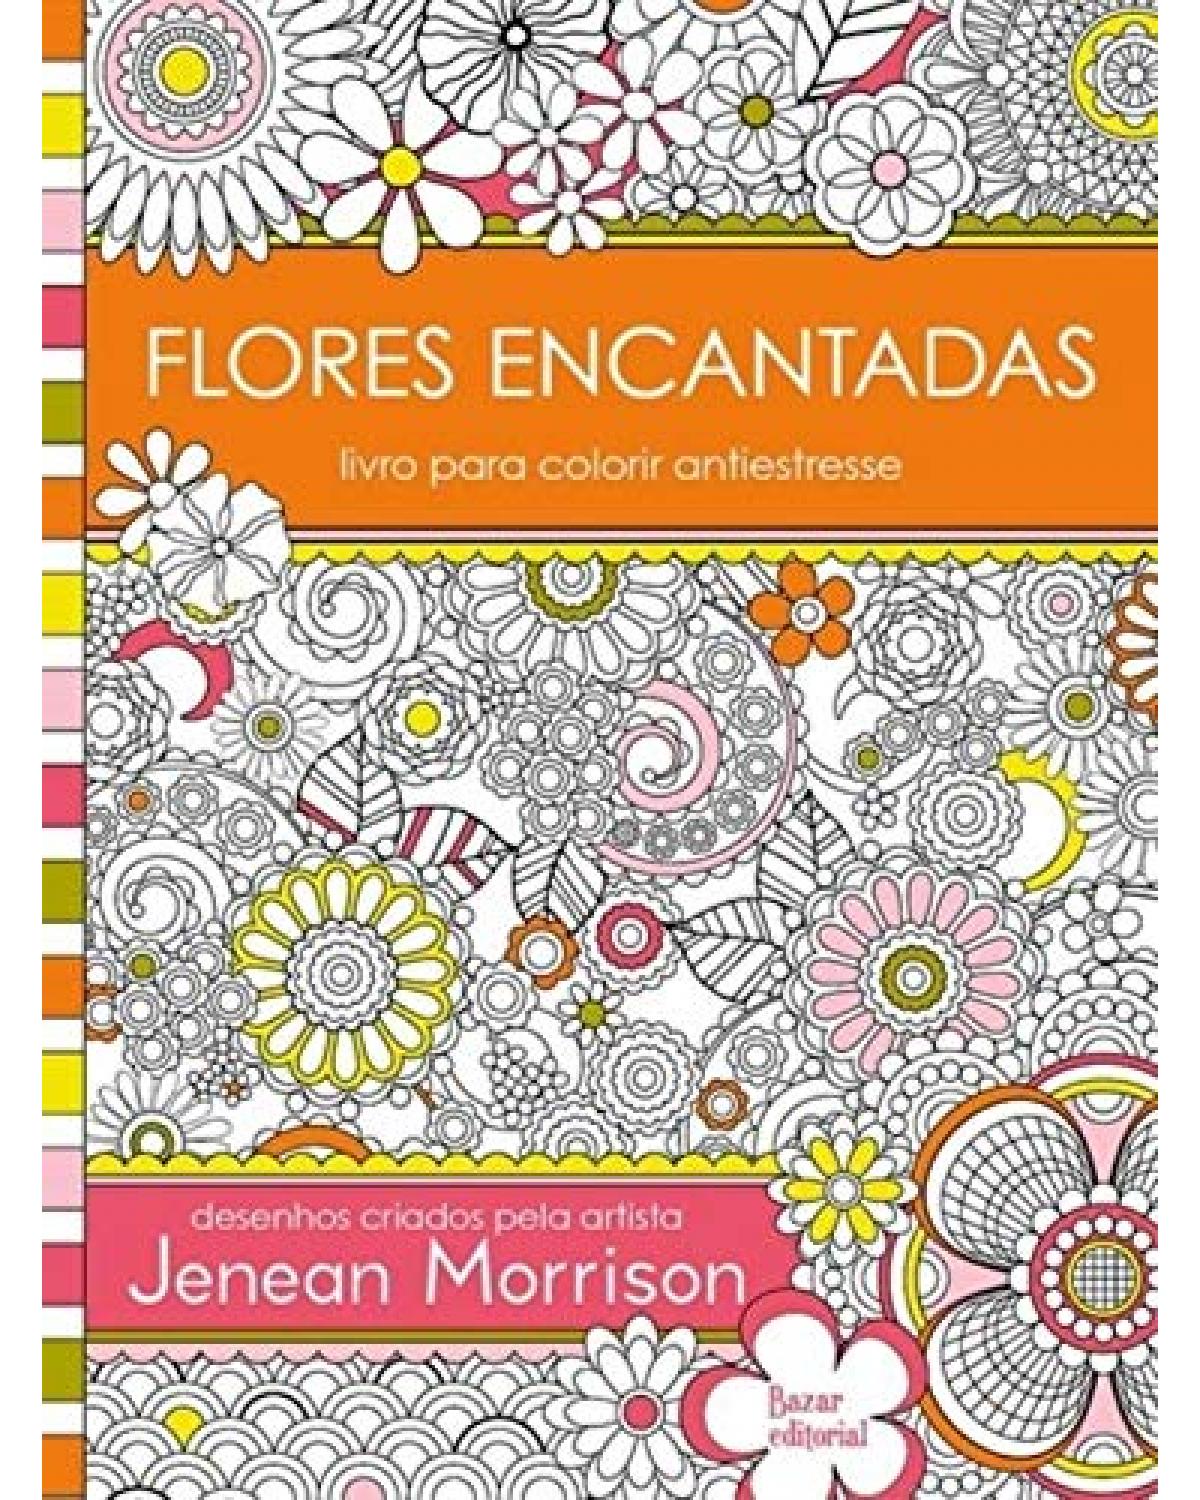 Flores encantadas: Livro para colorir antiestresse